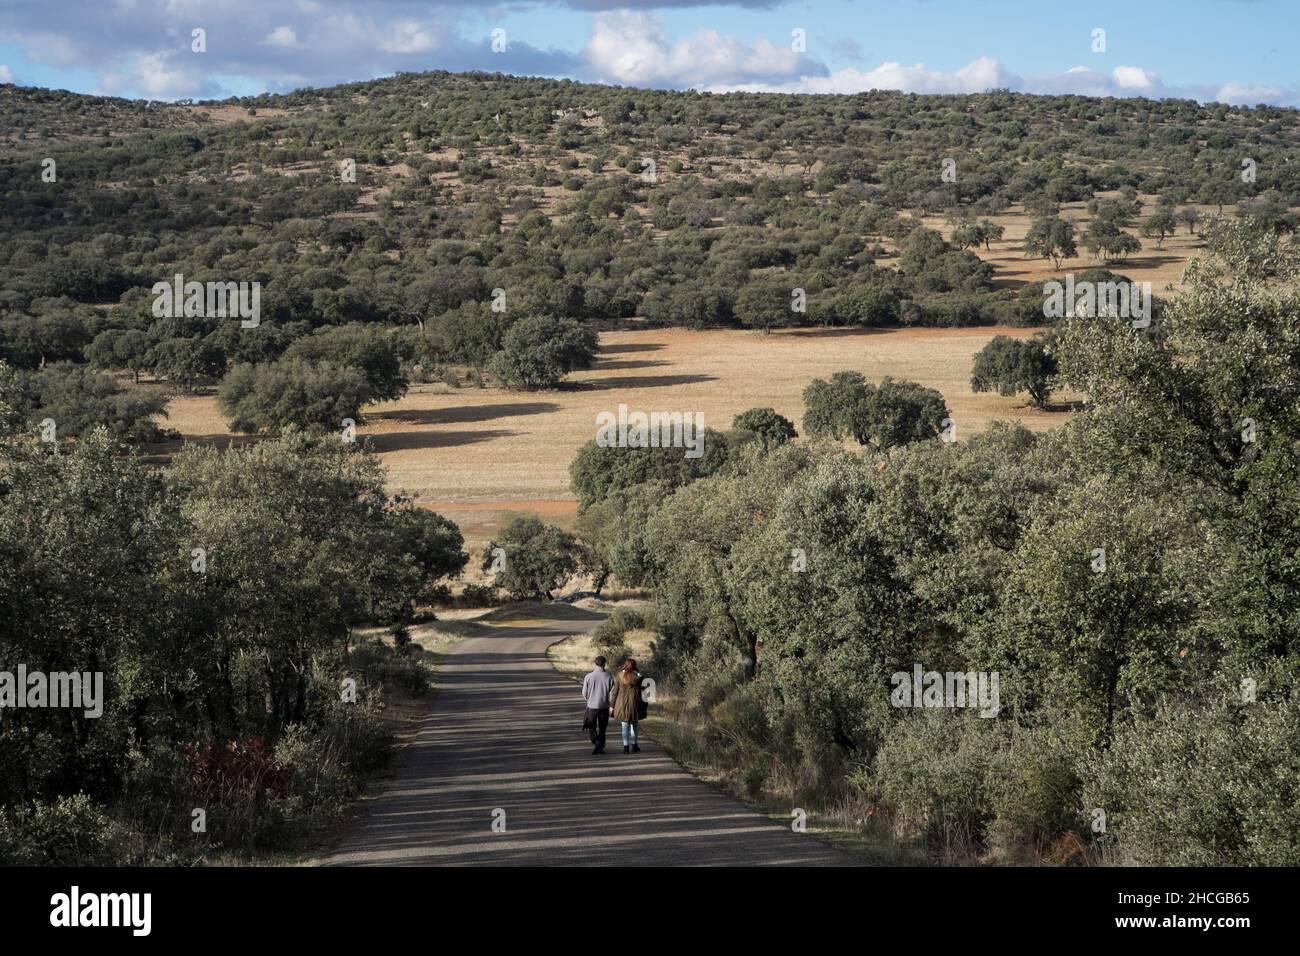 Una coppia che cammina lungo una strada asfaltata attraverso le basse colline coperte di alberi della regione di la Mancha in Spagna Foto Stock